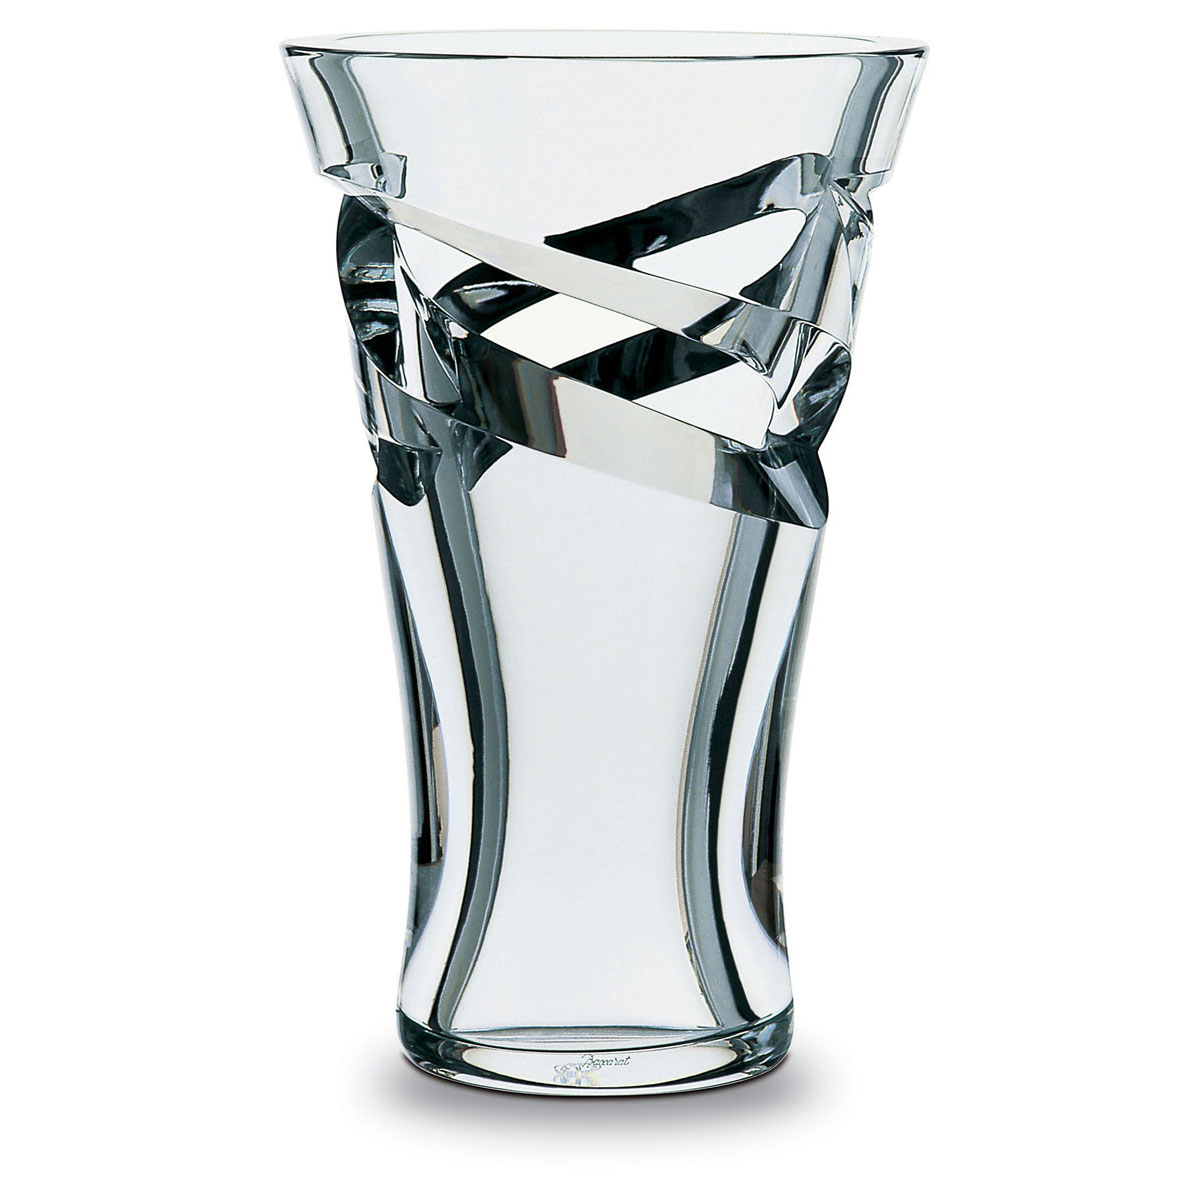 Baccarat Crystal, Tornado Large Crystal Vase 14 7/8